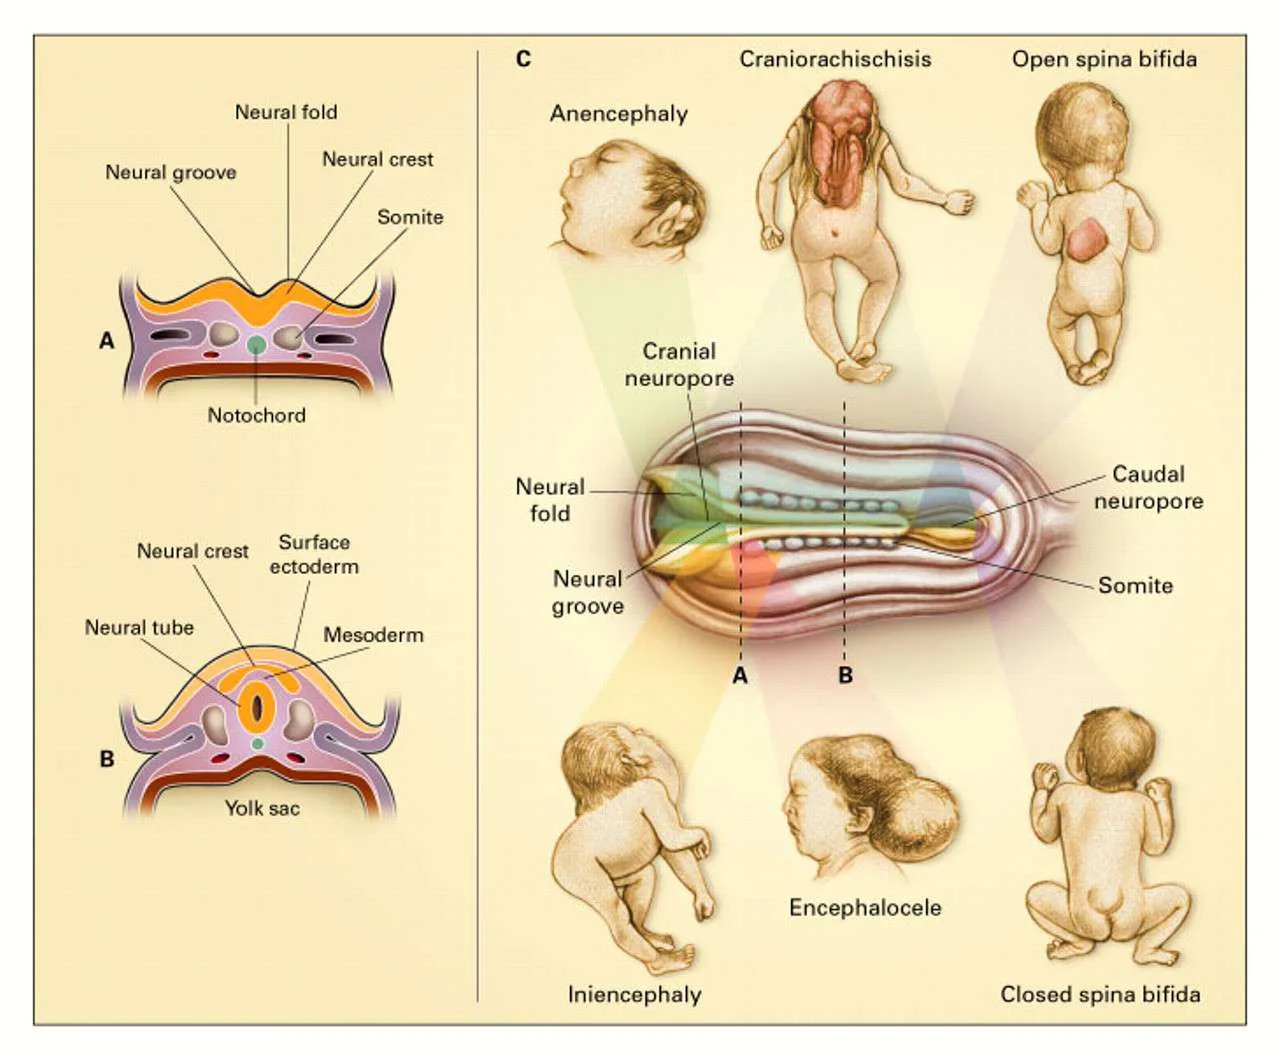 اصابات الجهاز الهضمي لحديثي الولادة